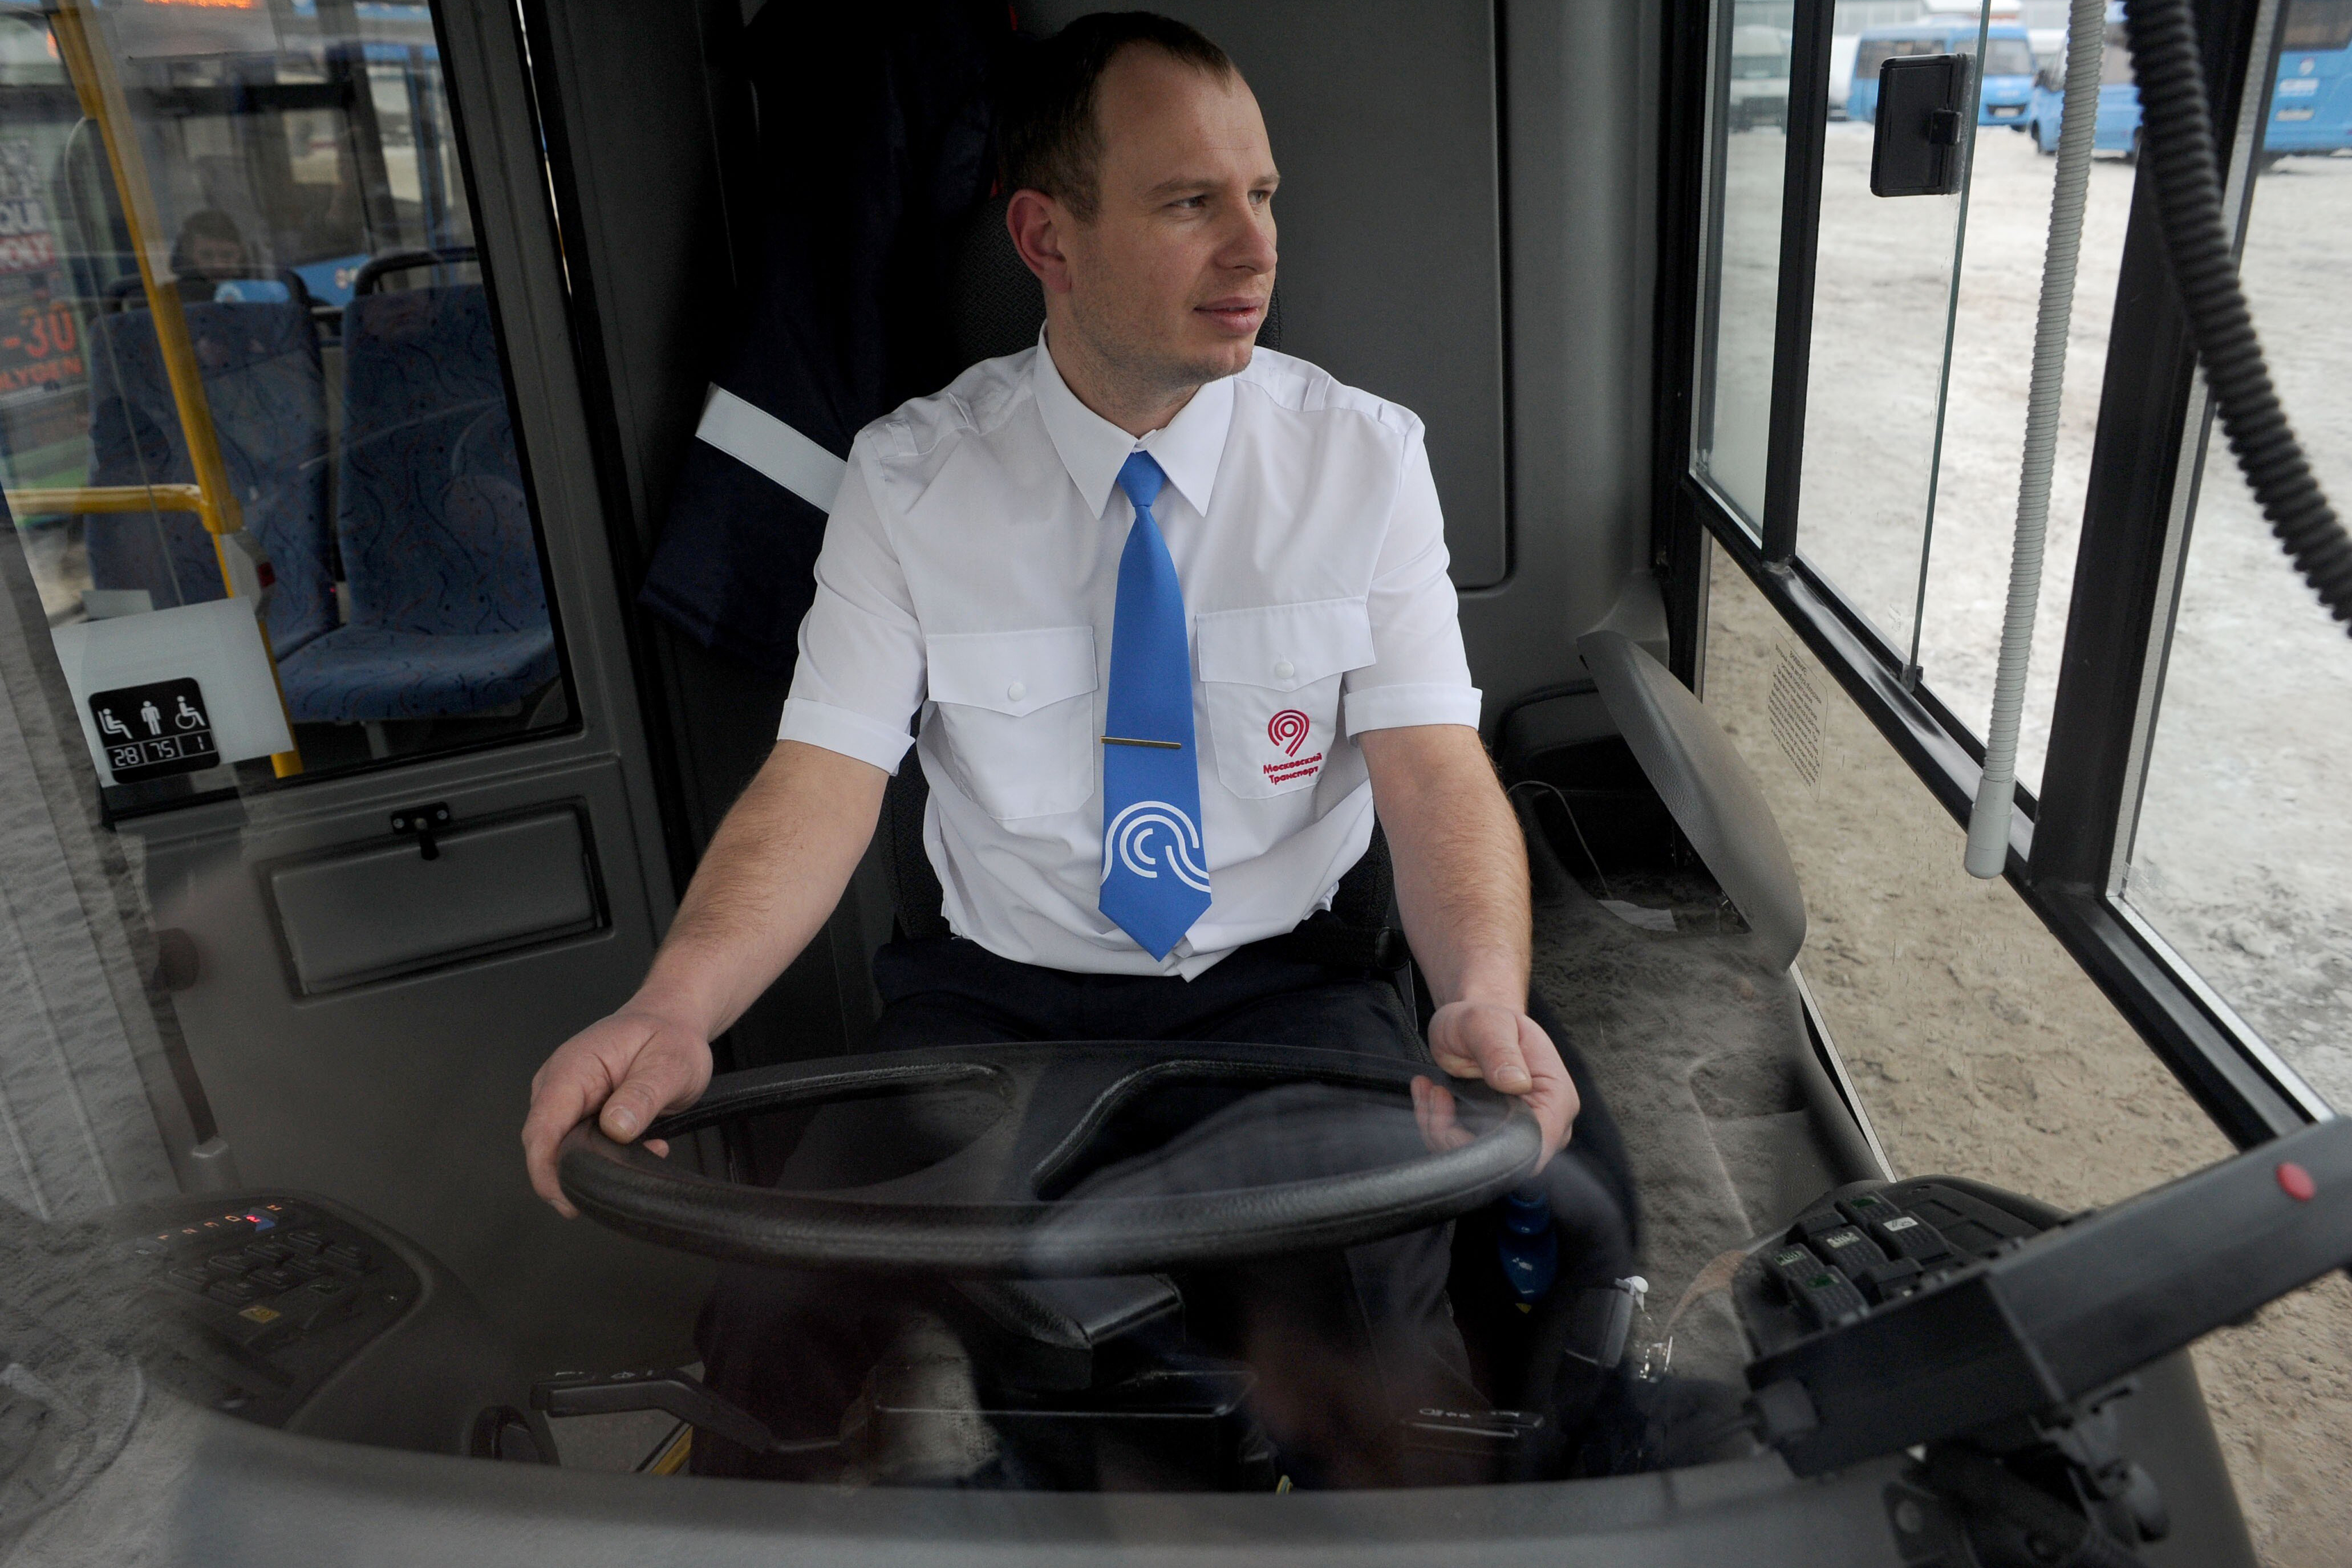 Работа водителем автобуса в московском. Форма водителя автобуса. Униформа водителя автобуса. Одежда для водителей автобусов. Форменная одежда для водителей общественного транспорта.